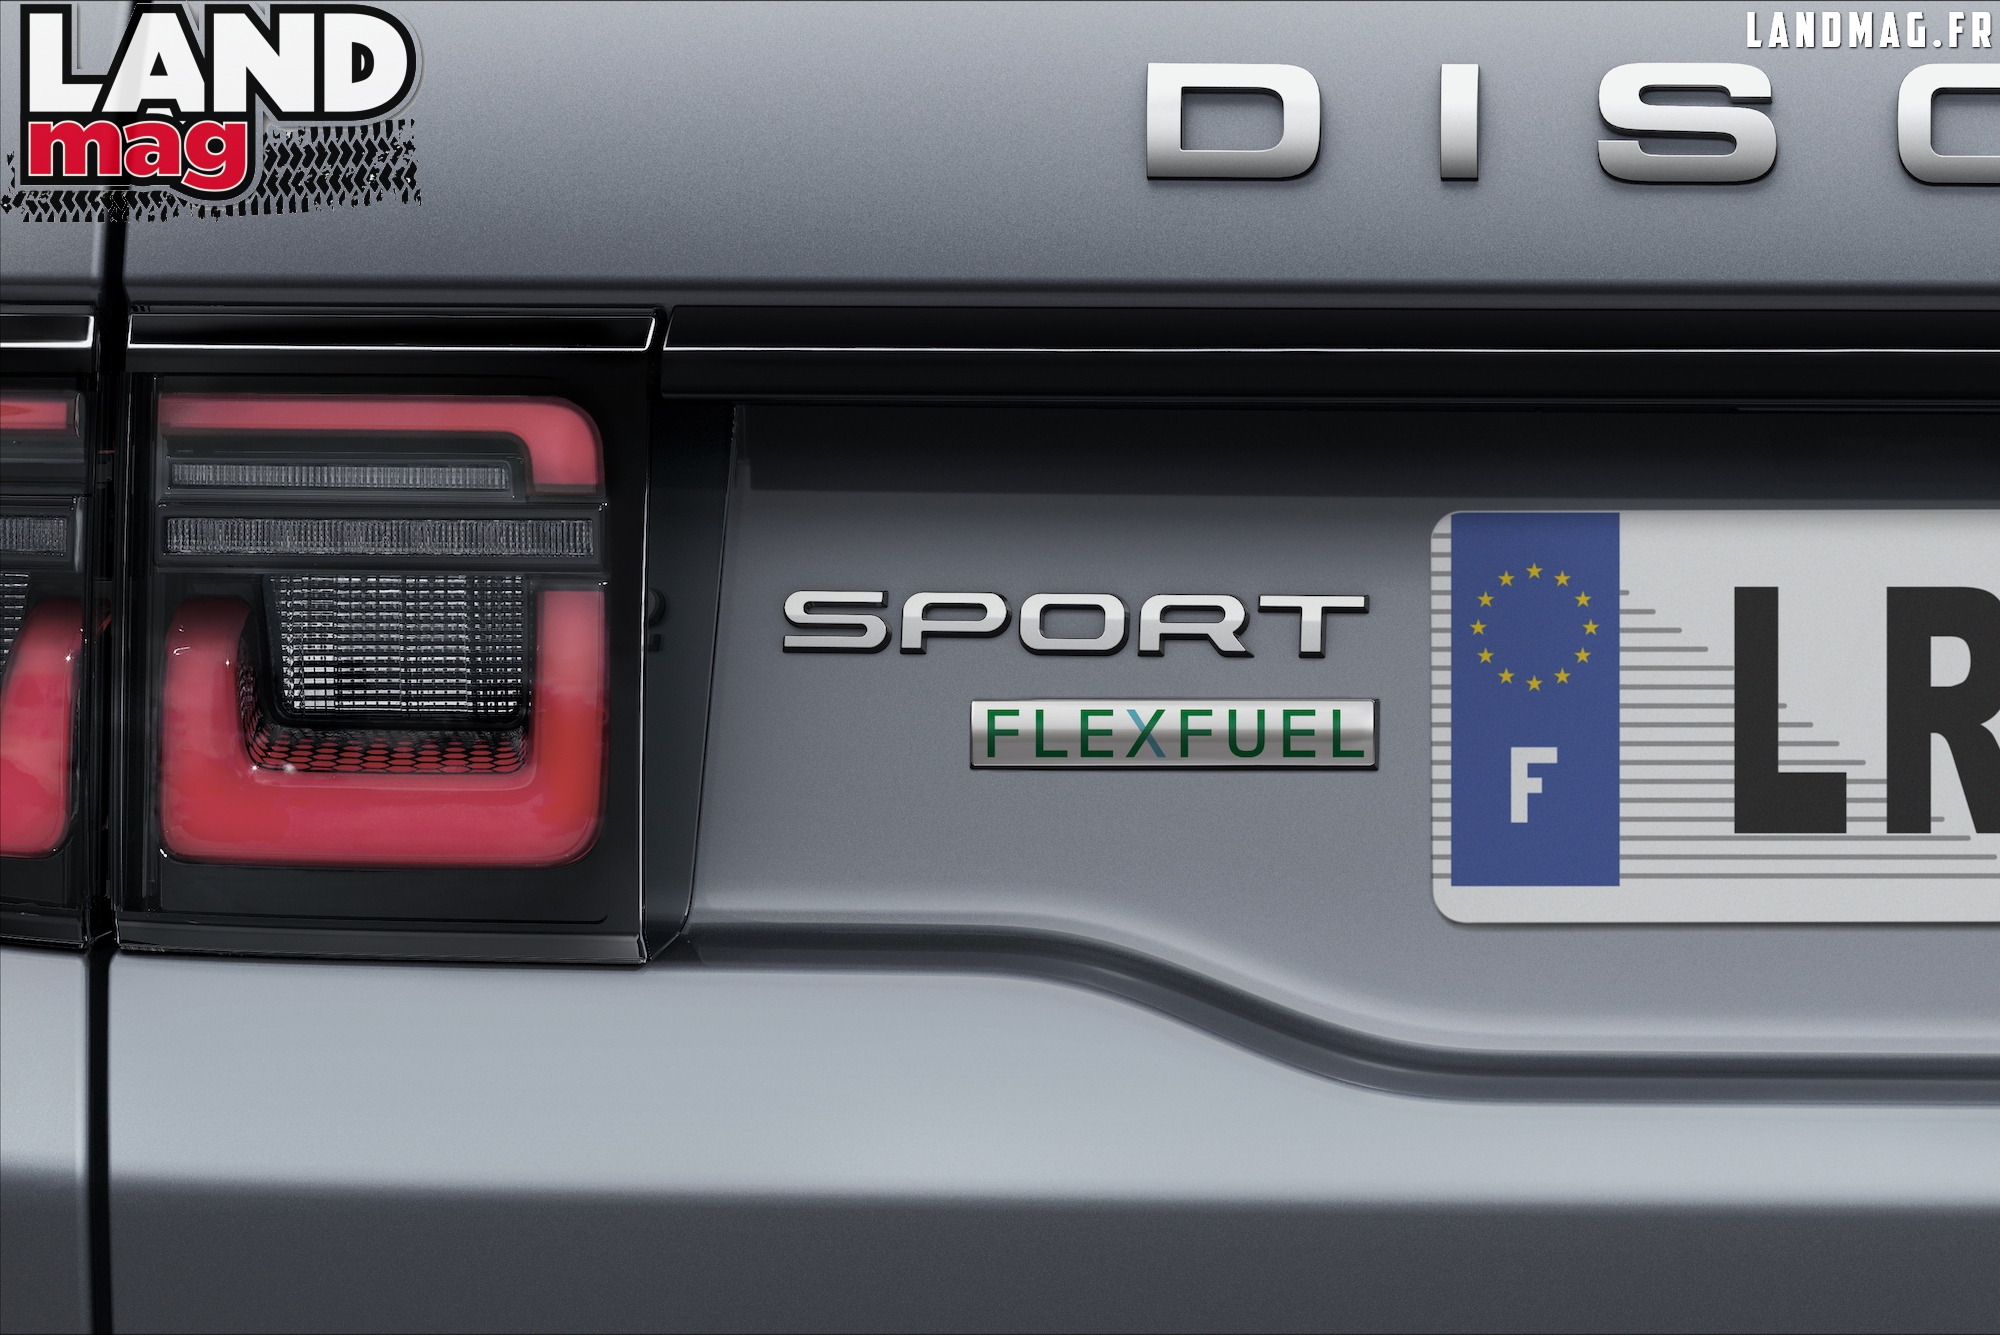 Bonne nouvelle: les Land Rover Evoque et Discovery Sport carburent maintenant à l’éthanol